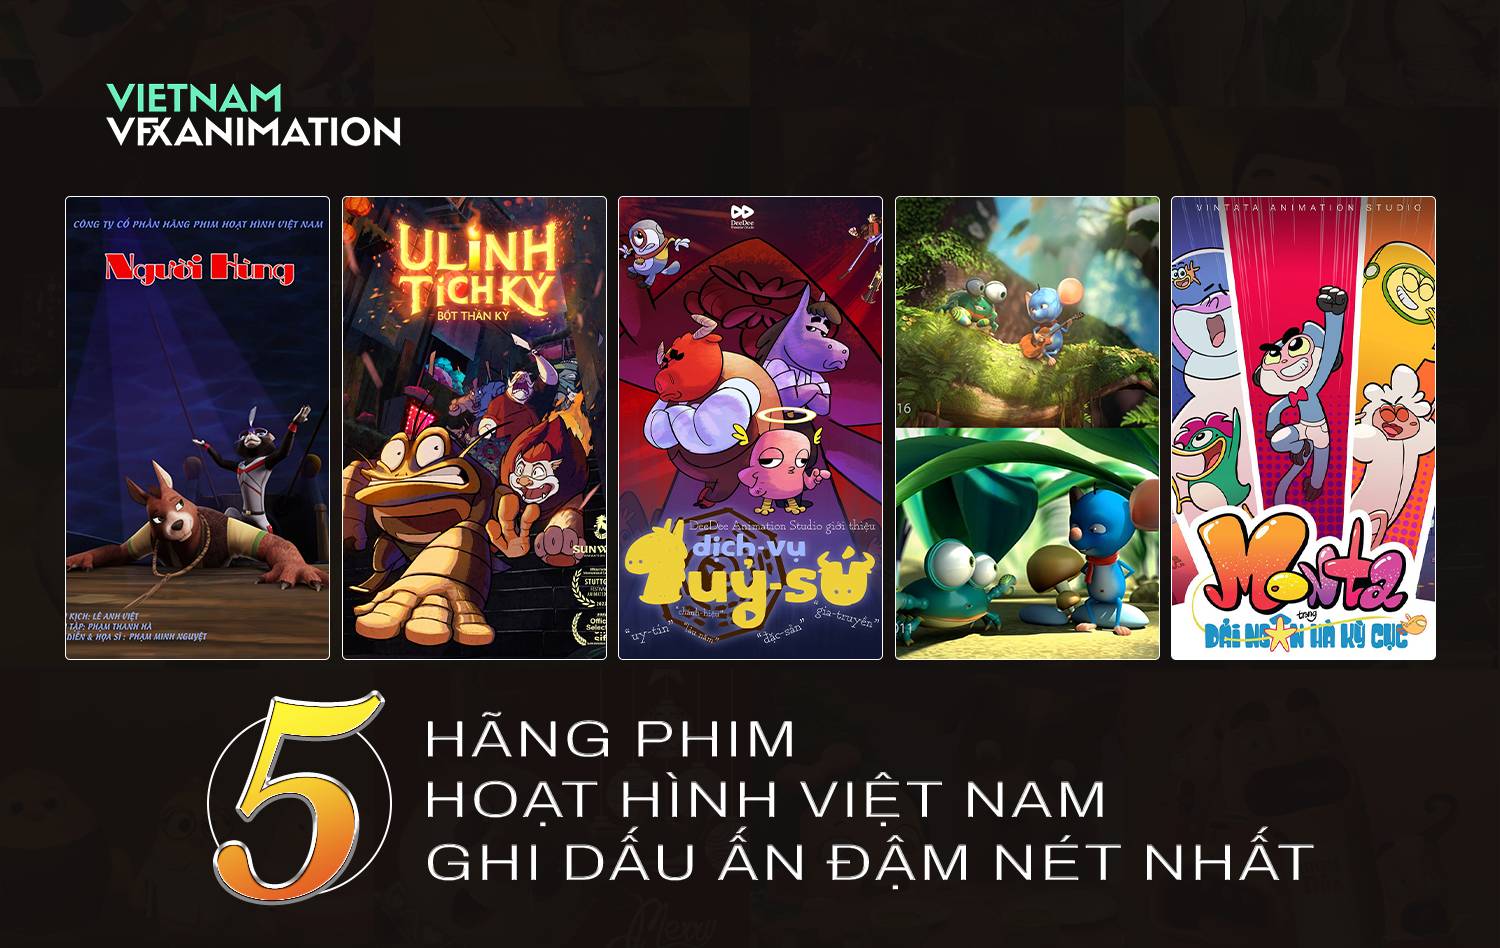 5 hãng phim hoạt hình Việt Nam ghi dấu ấn đậm nét nhất